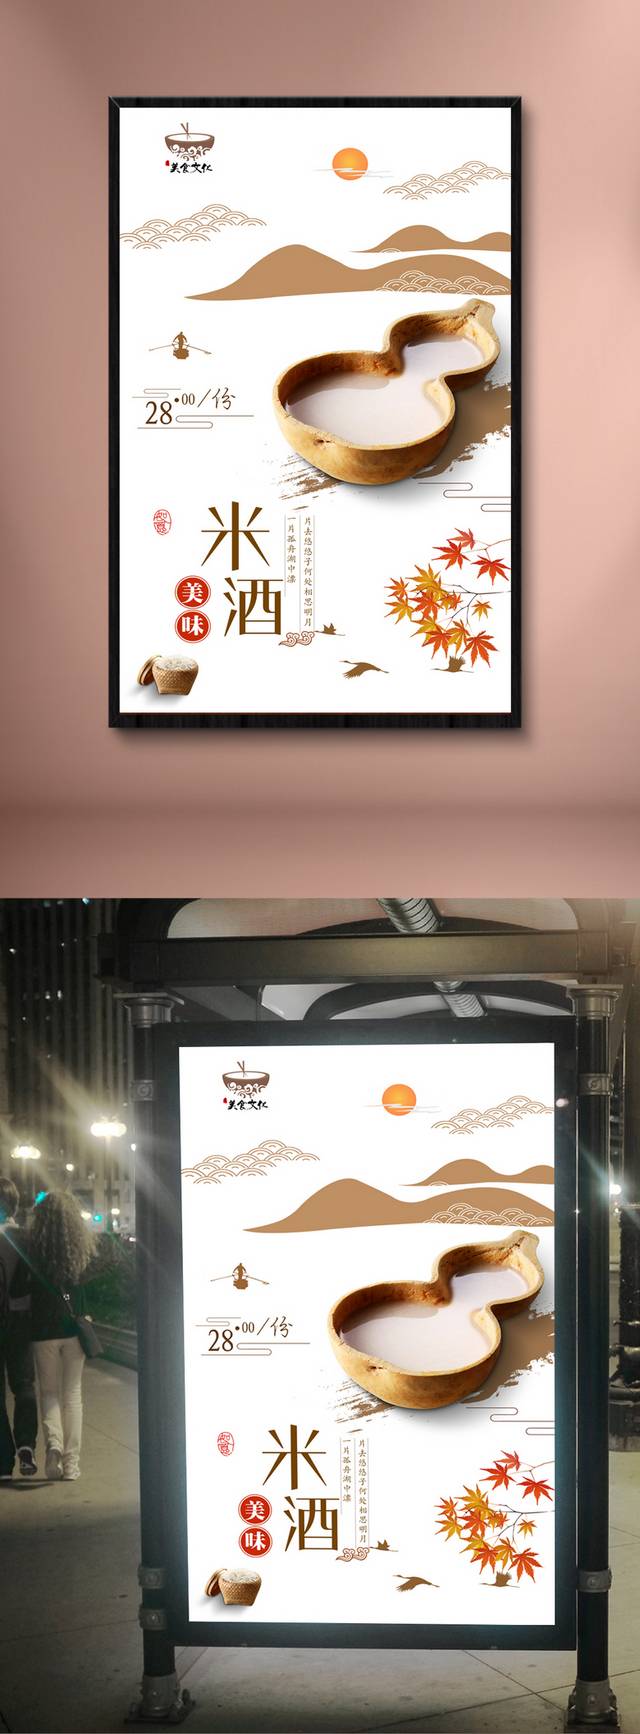 中国风米酒宣传海报设计